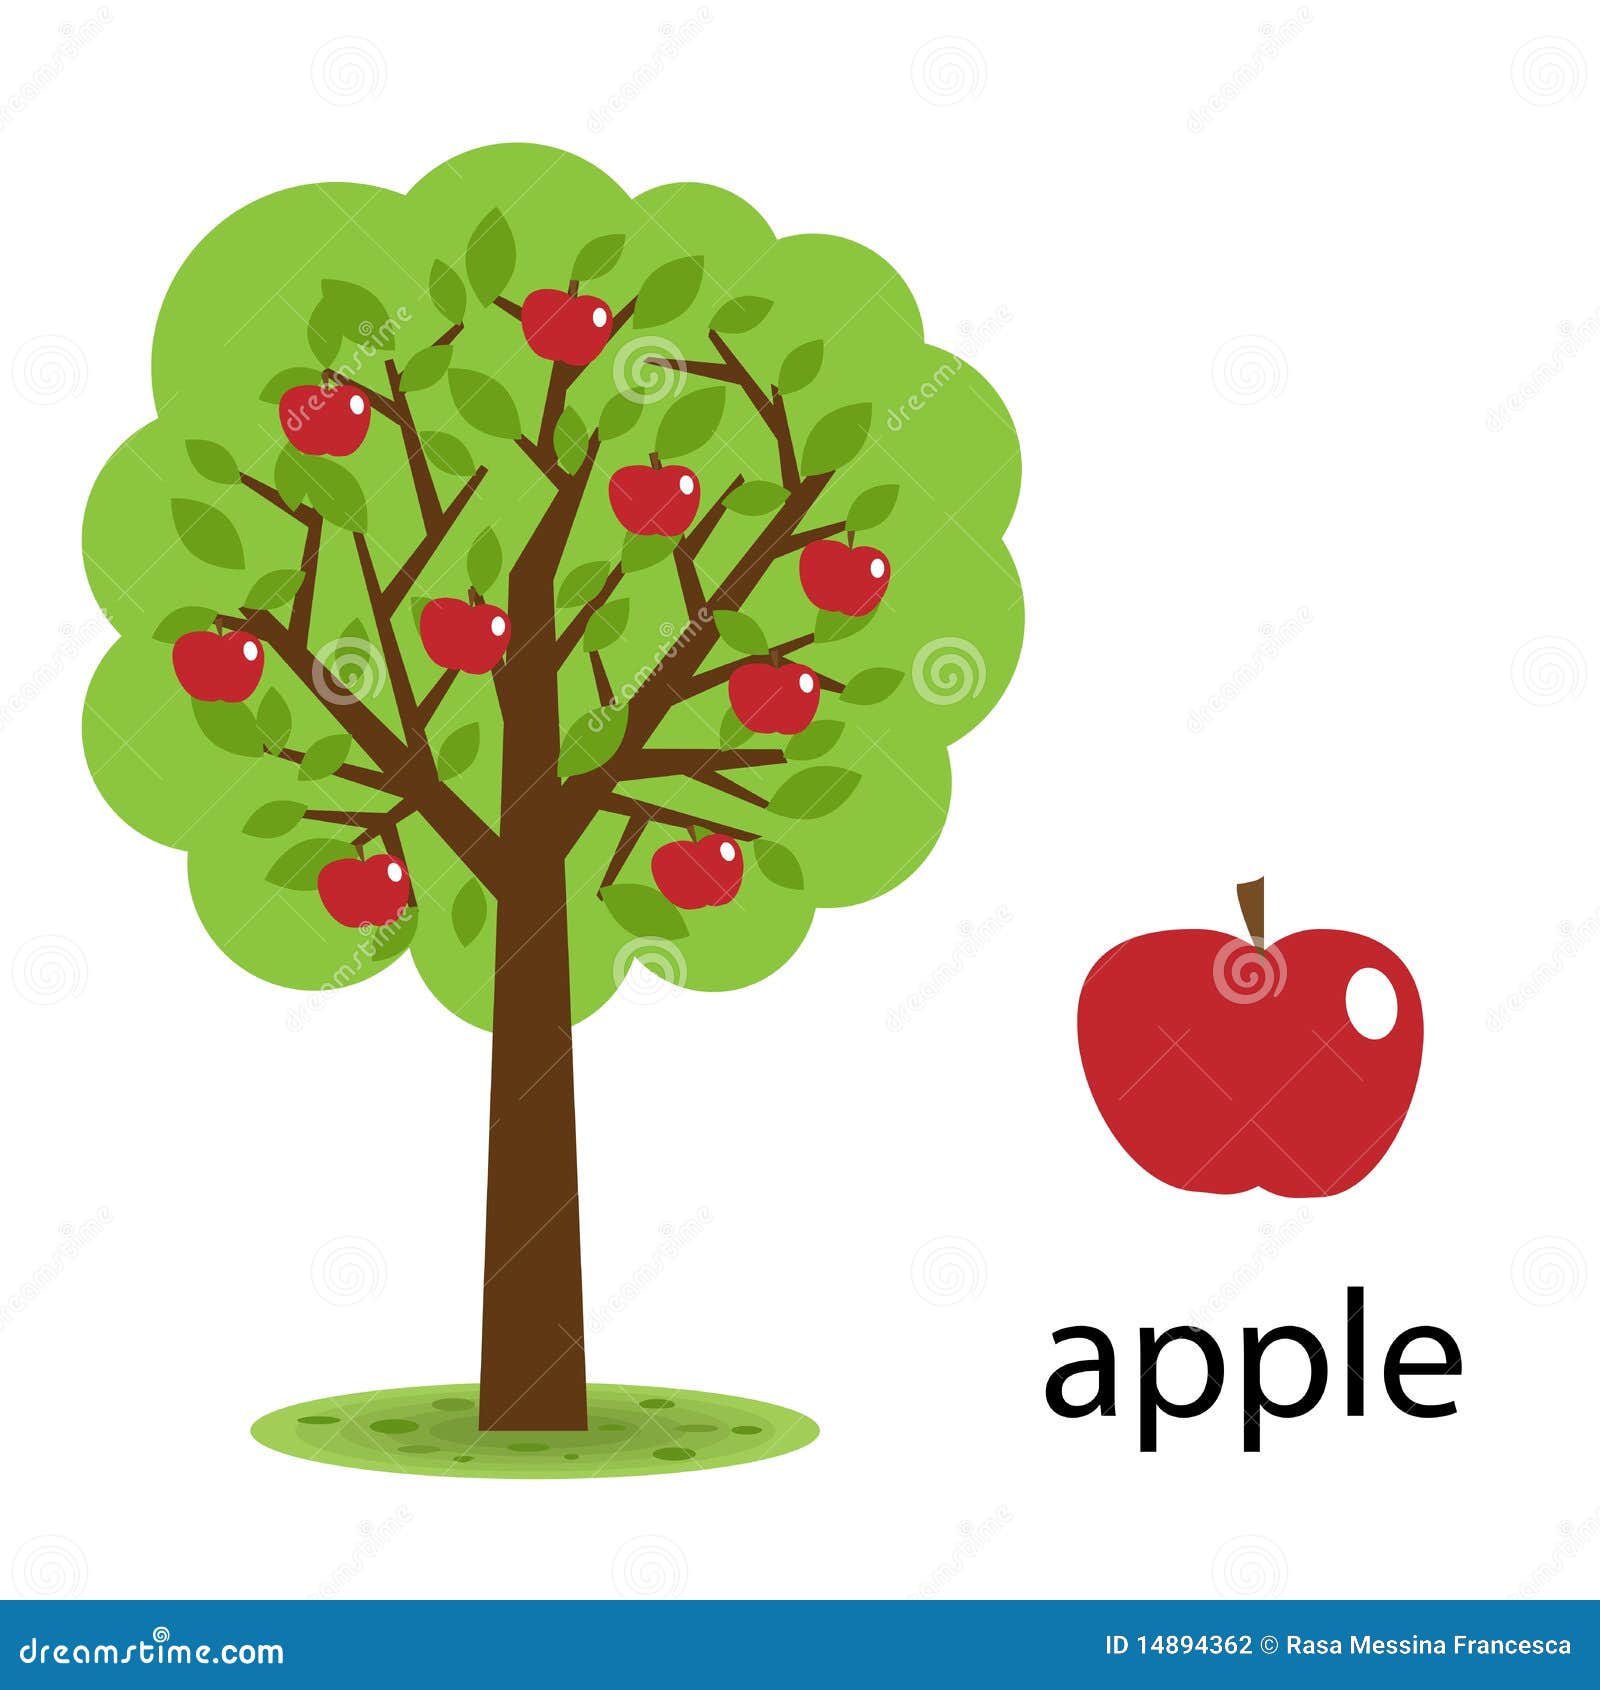 Realistic Cartoon Apple Tree